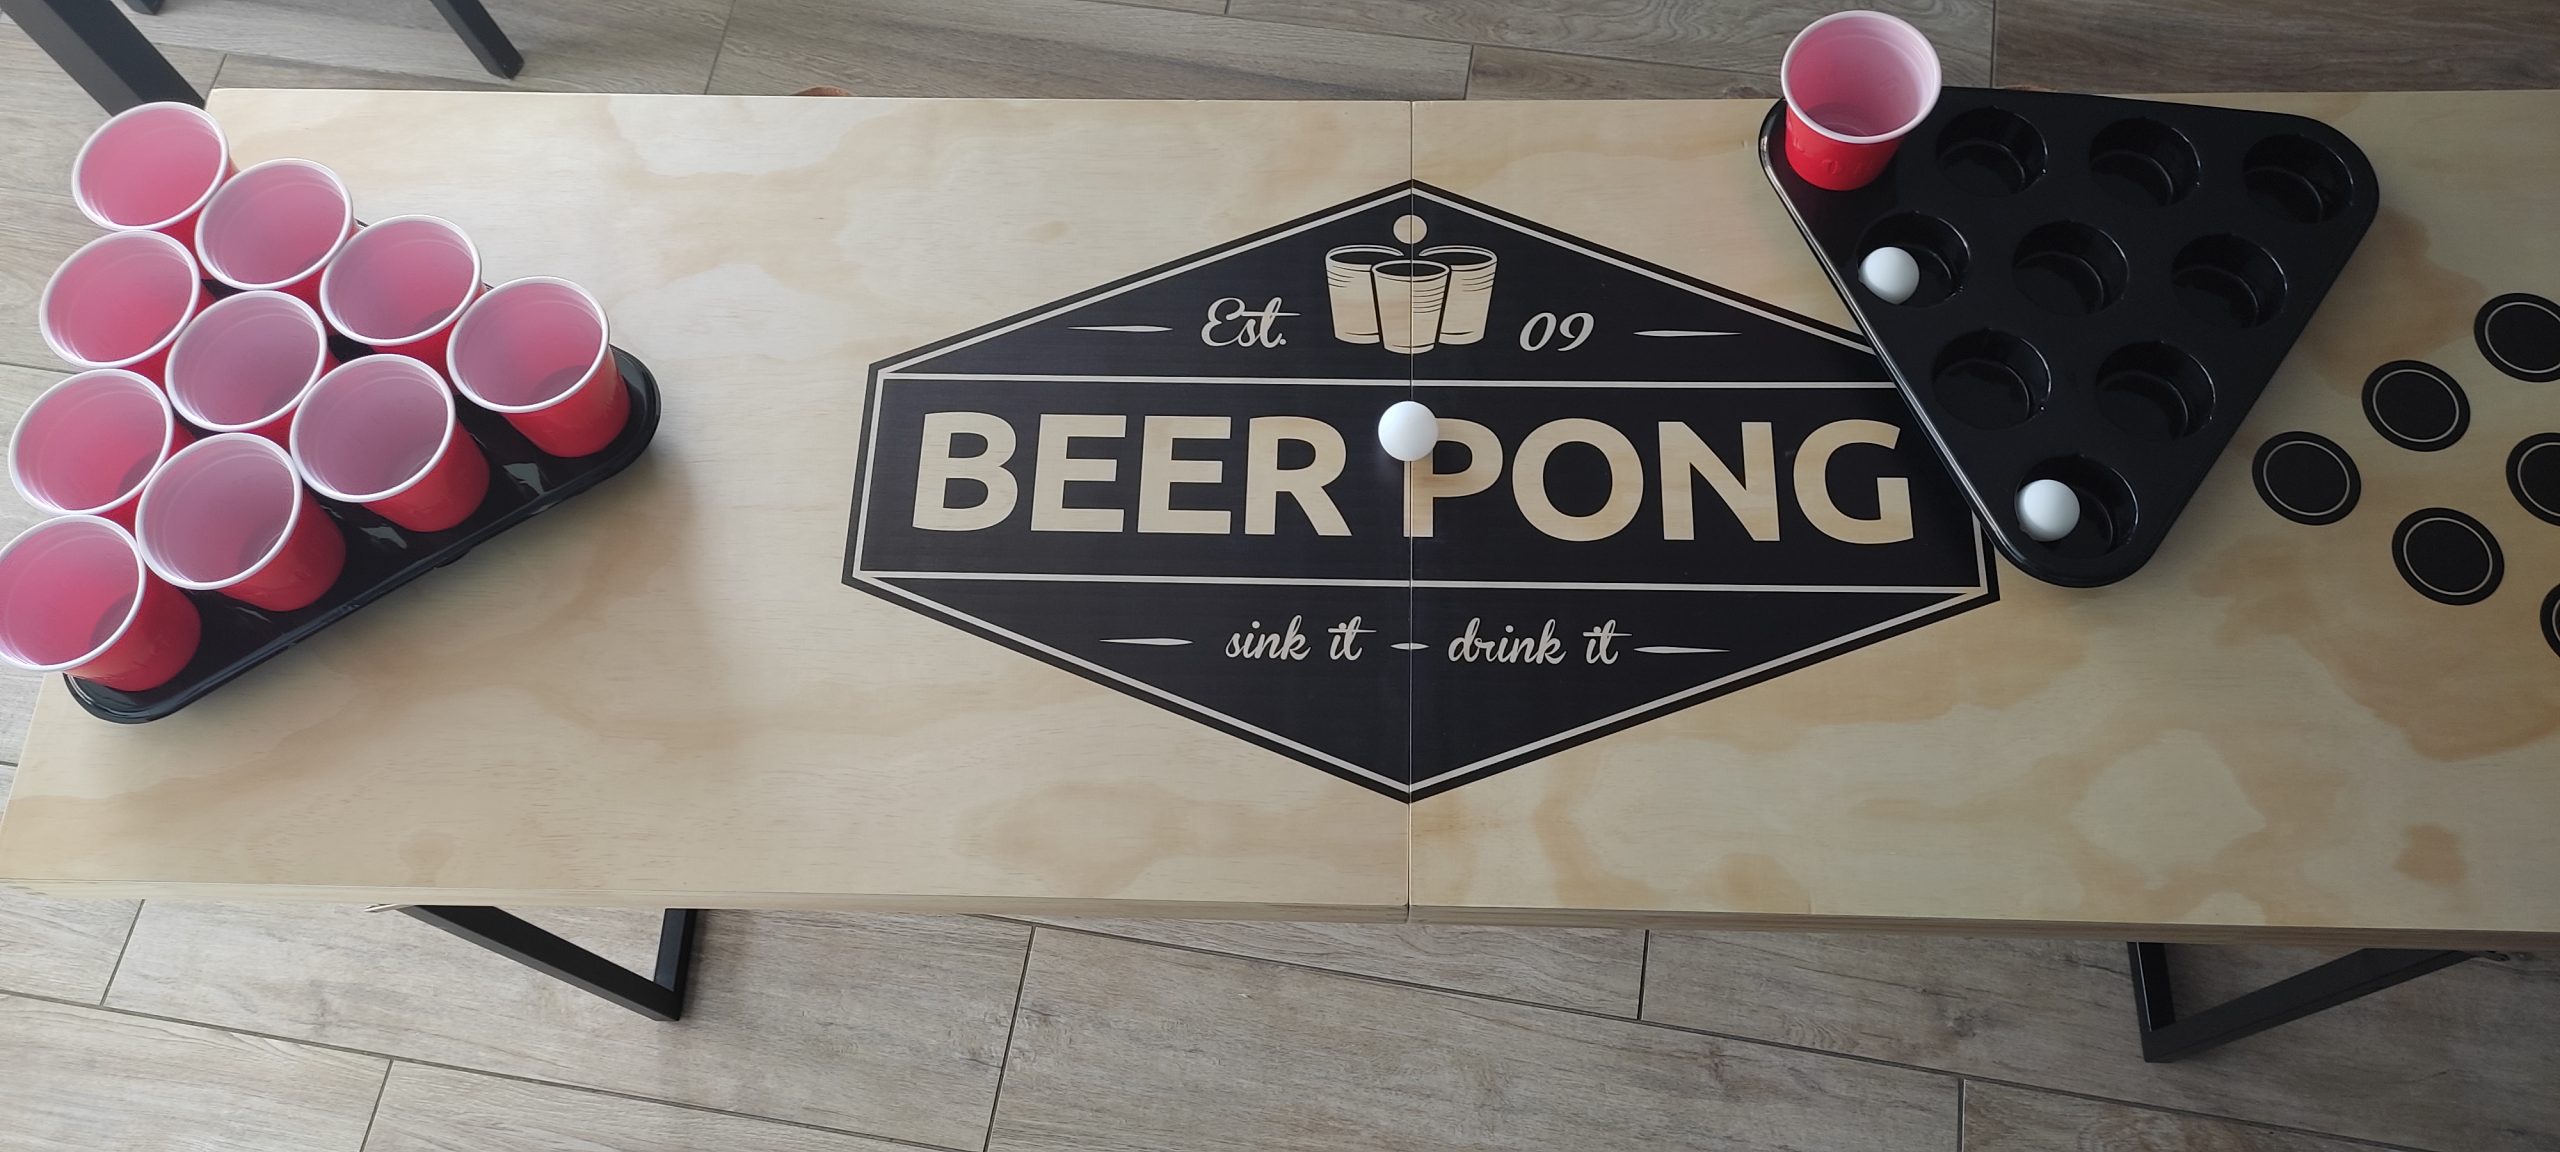 beer pong 2